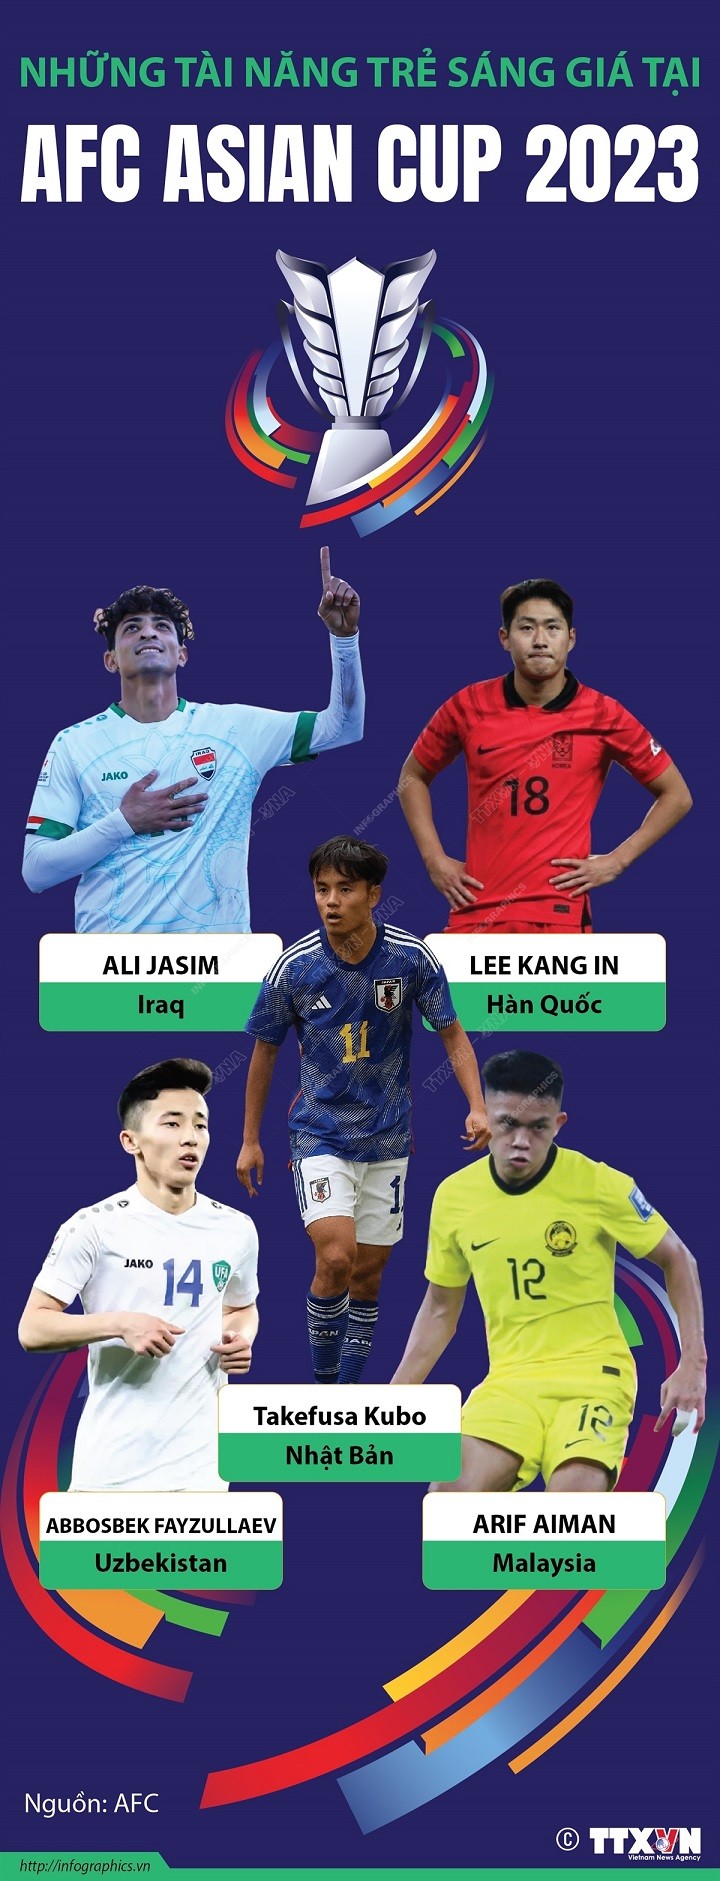 'Điểm mặt' những tài năng trẻ sáng giá, kỳ vọng 'làm nên chuyện' tại AFC Asian Cup 2023